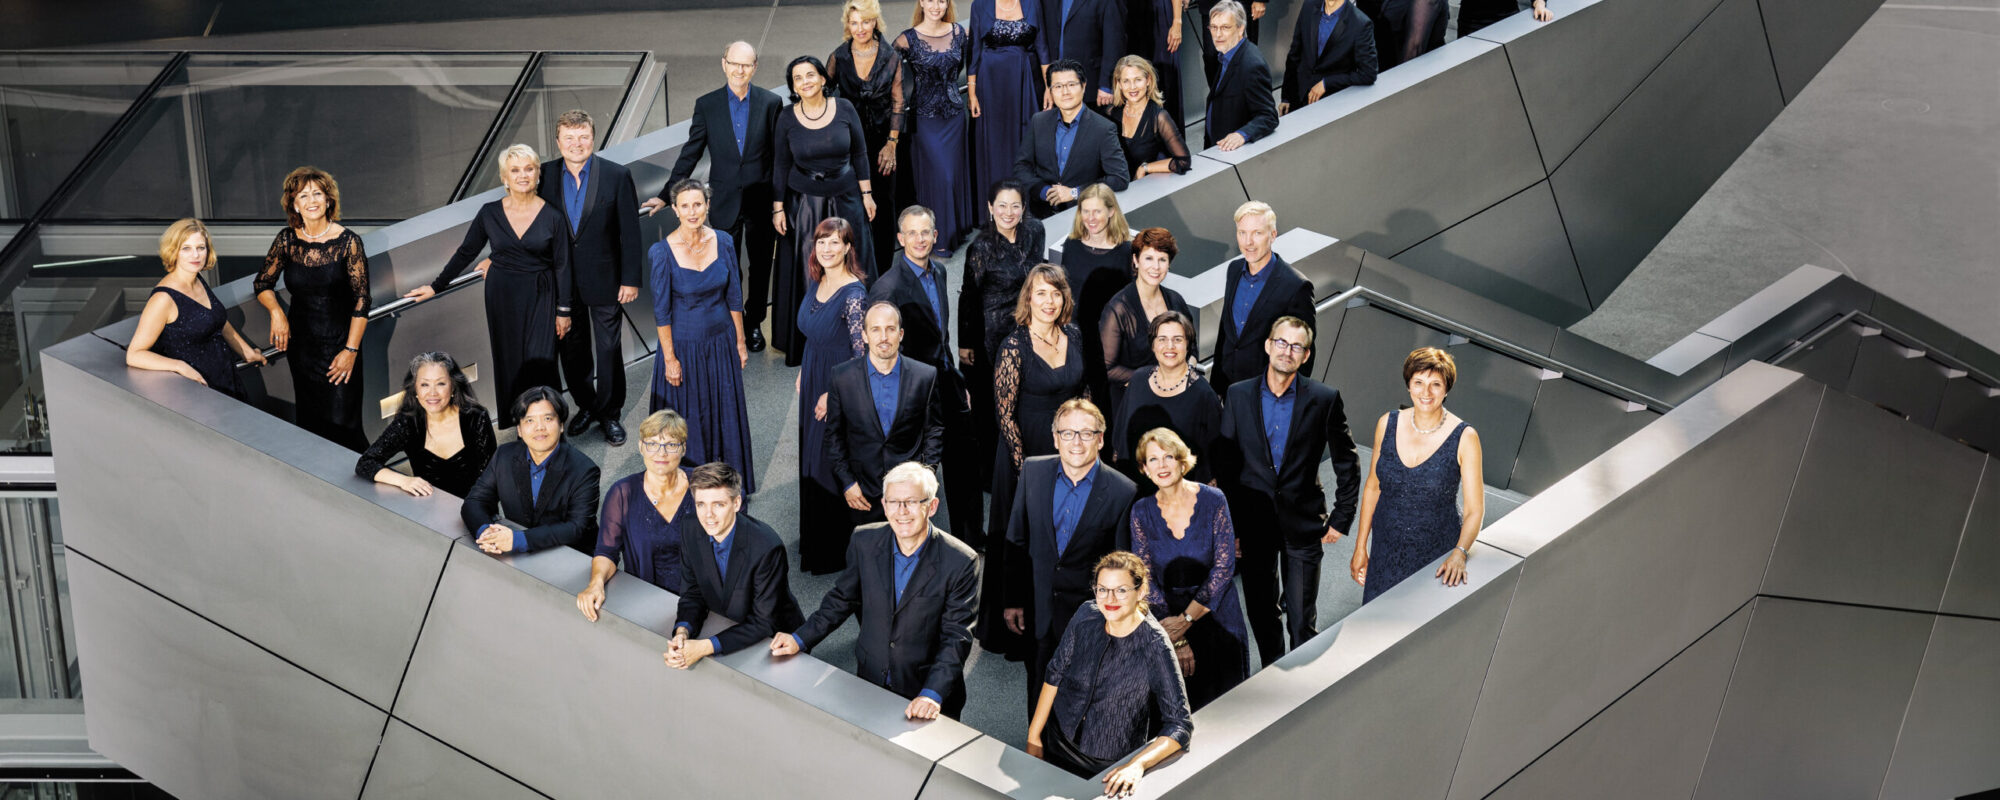 Chor des Bayerischen Rundfunks, © Atrid Ackermann